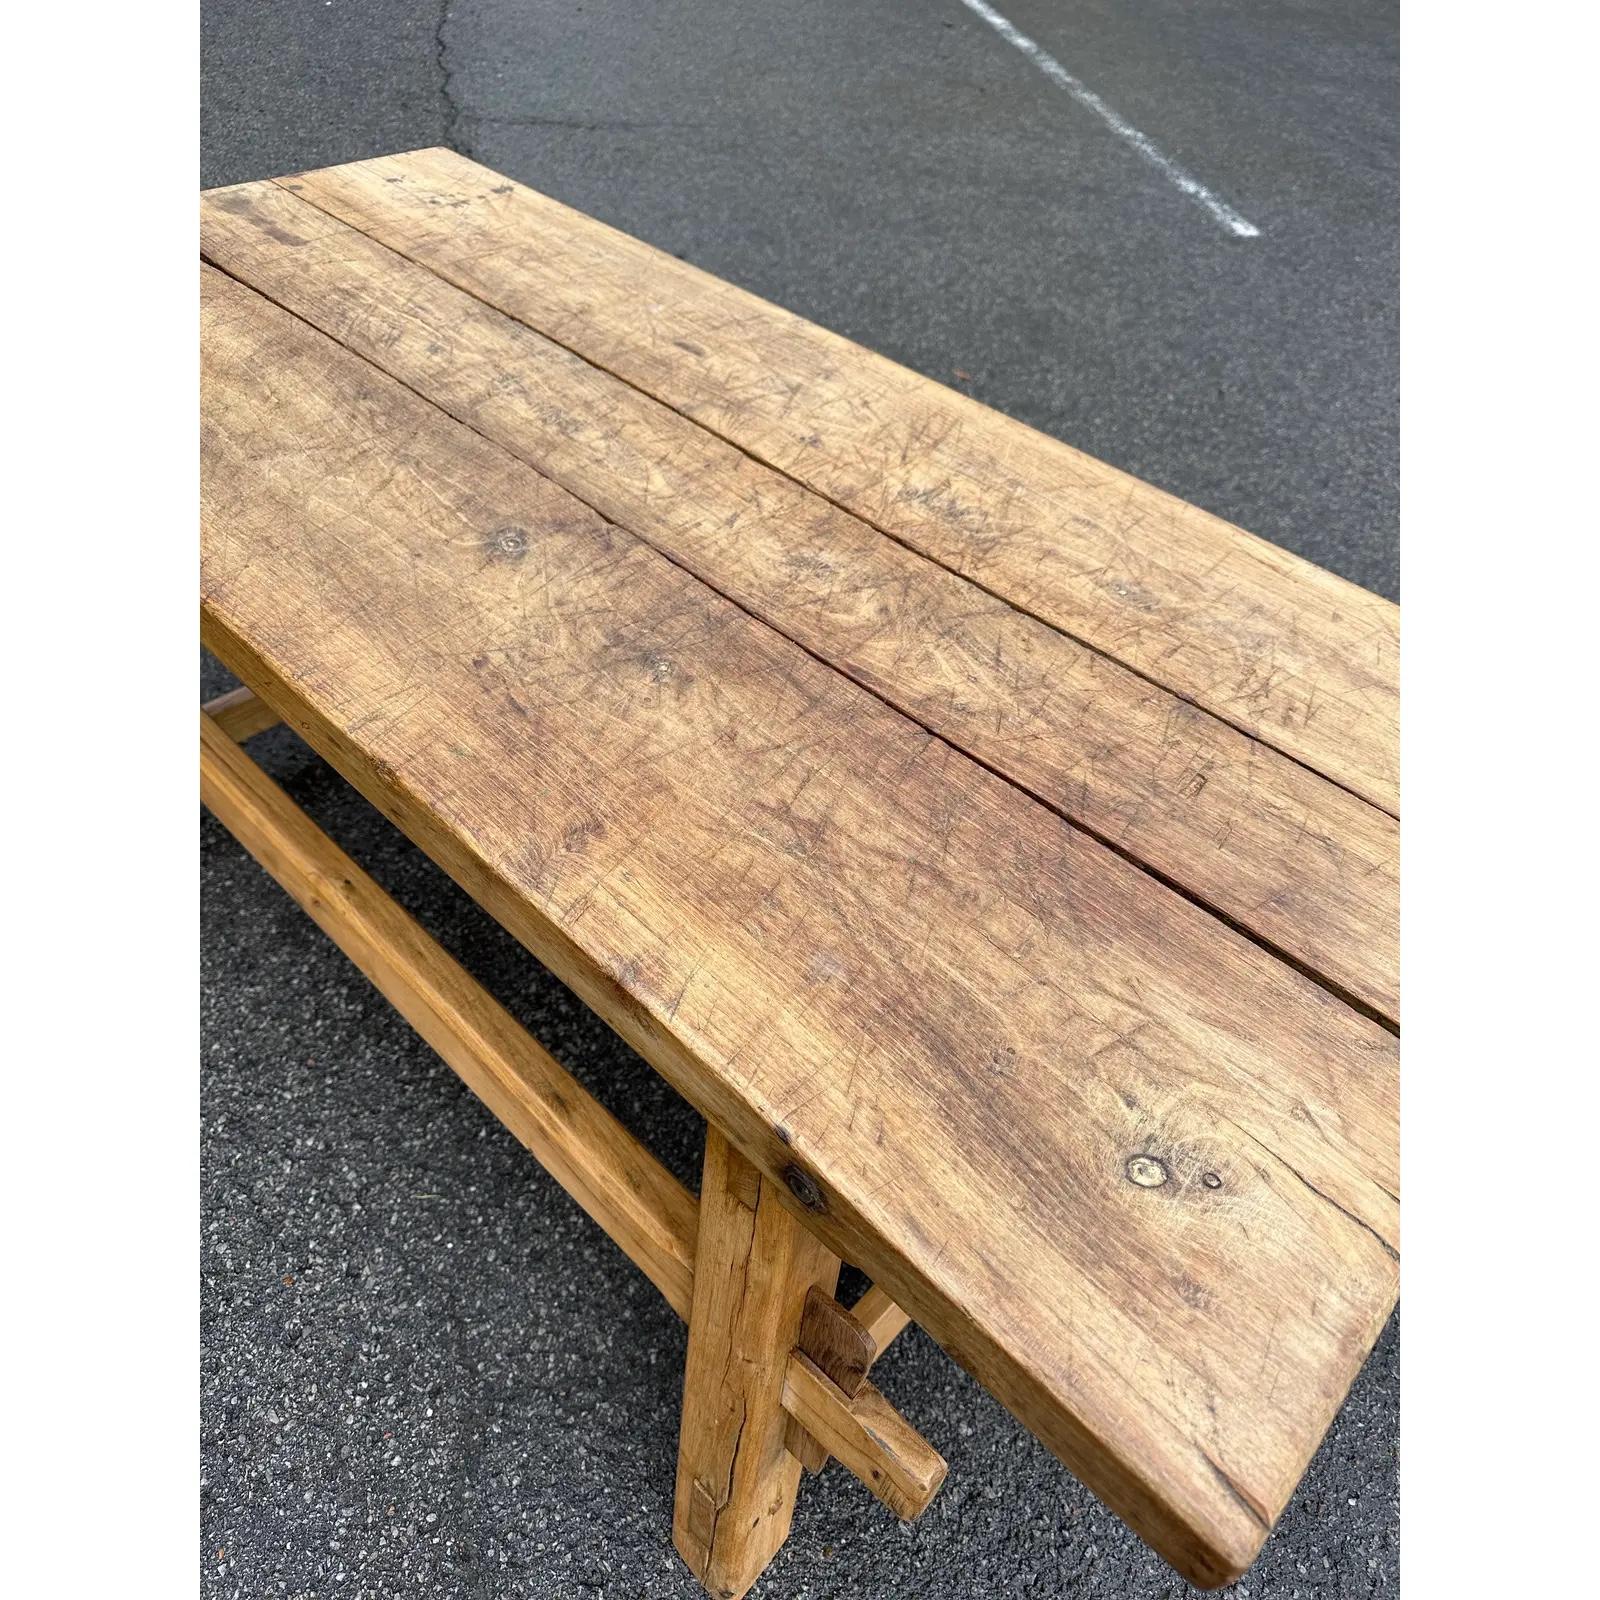 Cette table basse du 19e siècle est à la fois simple et belle ! Cette pièce a été utilisée à l'origine comme table de boucher et a été réduite à la taille d'une table basse. Les années d'utilisation ont créé une belle patine ainsi que des détails